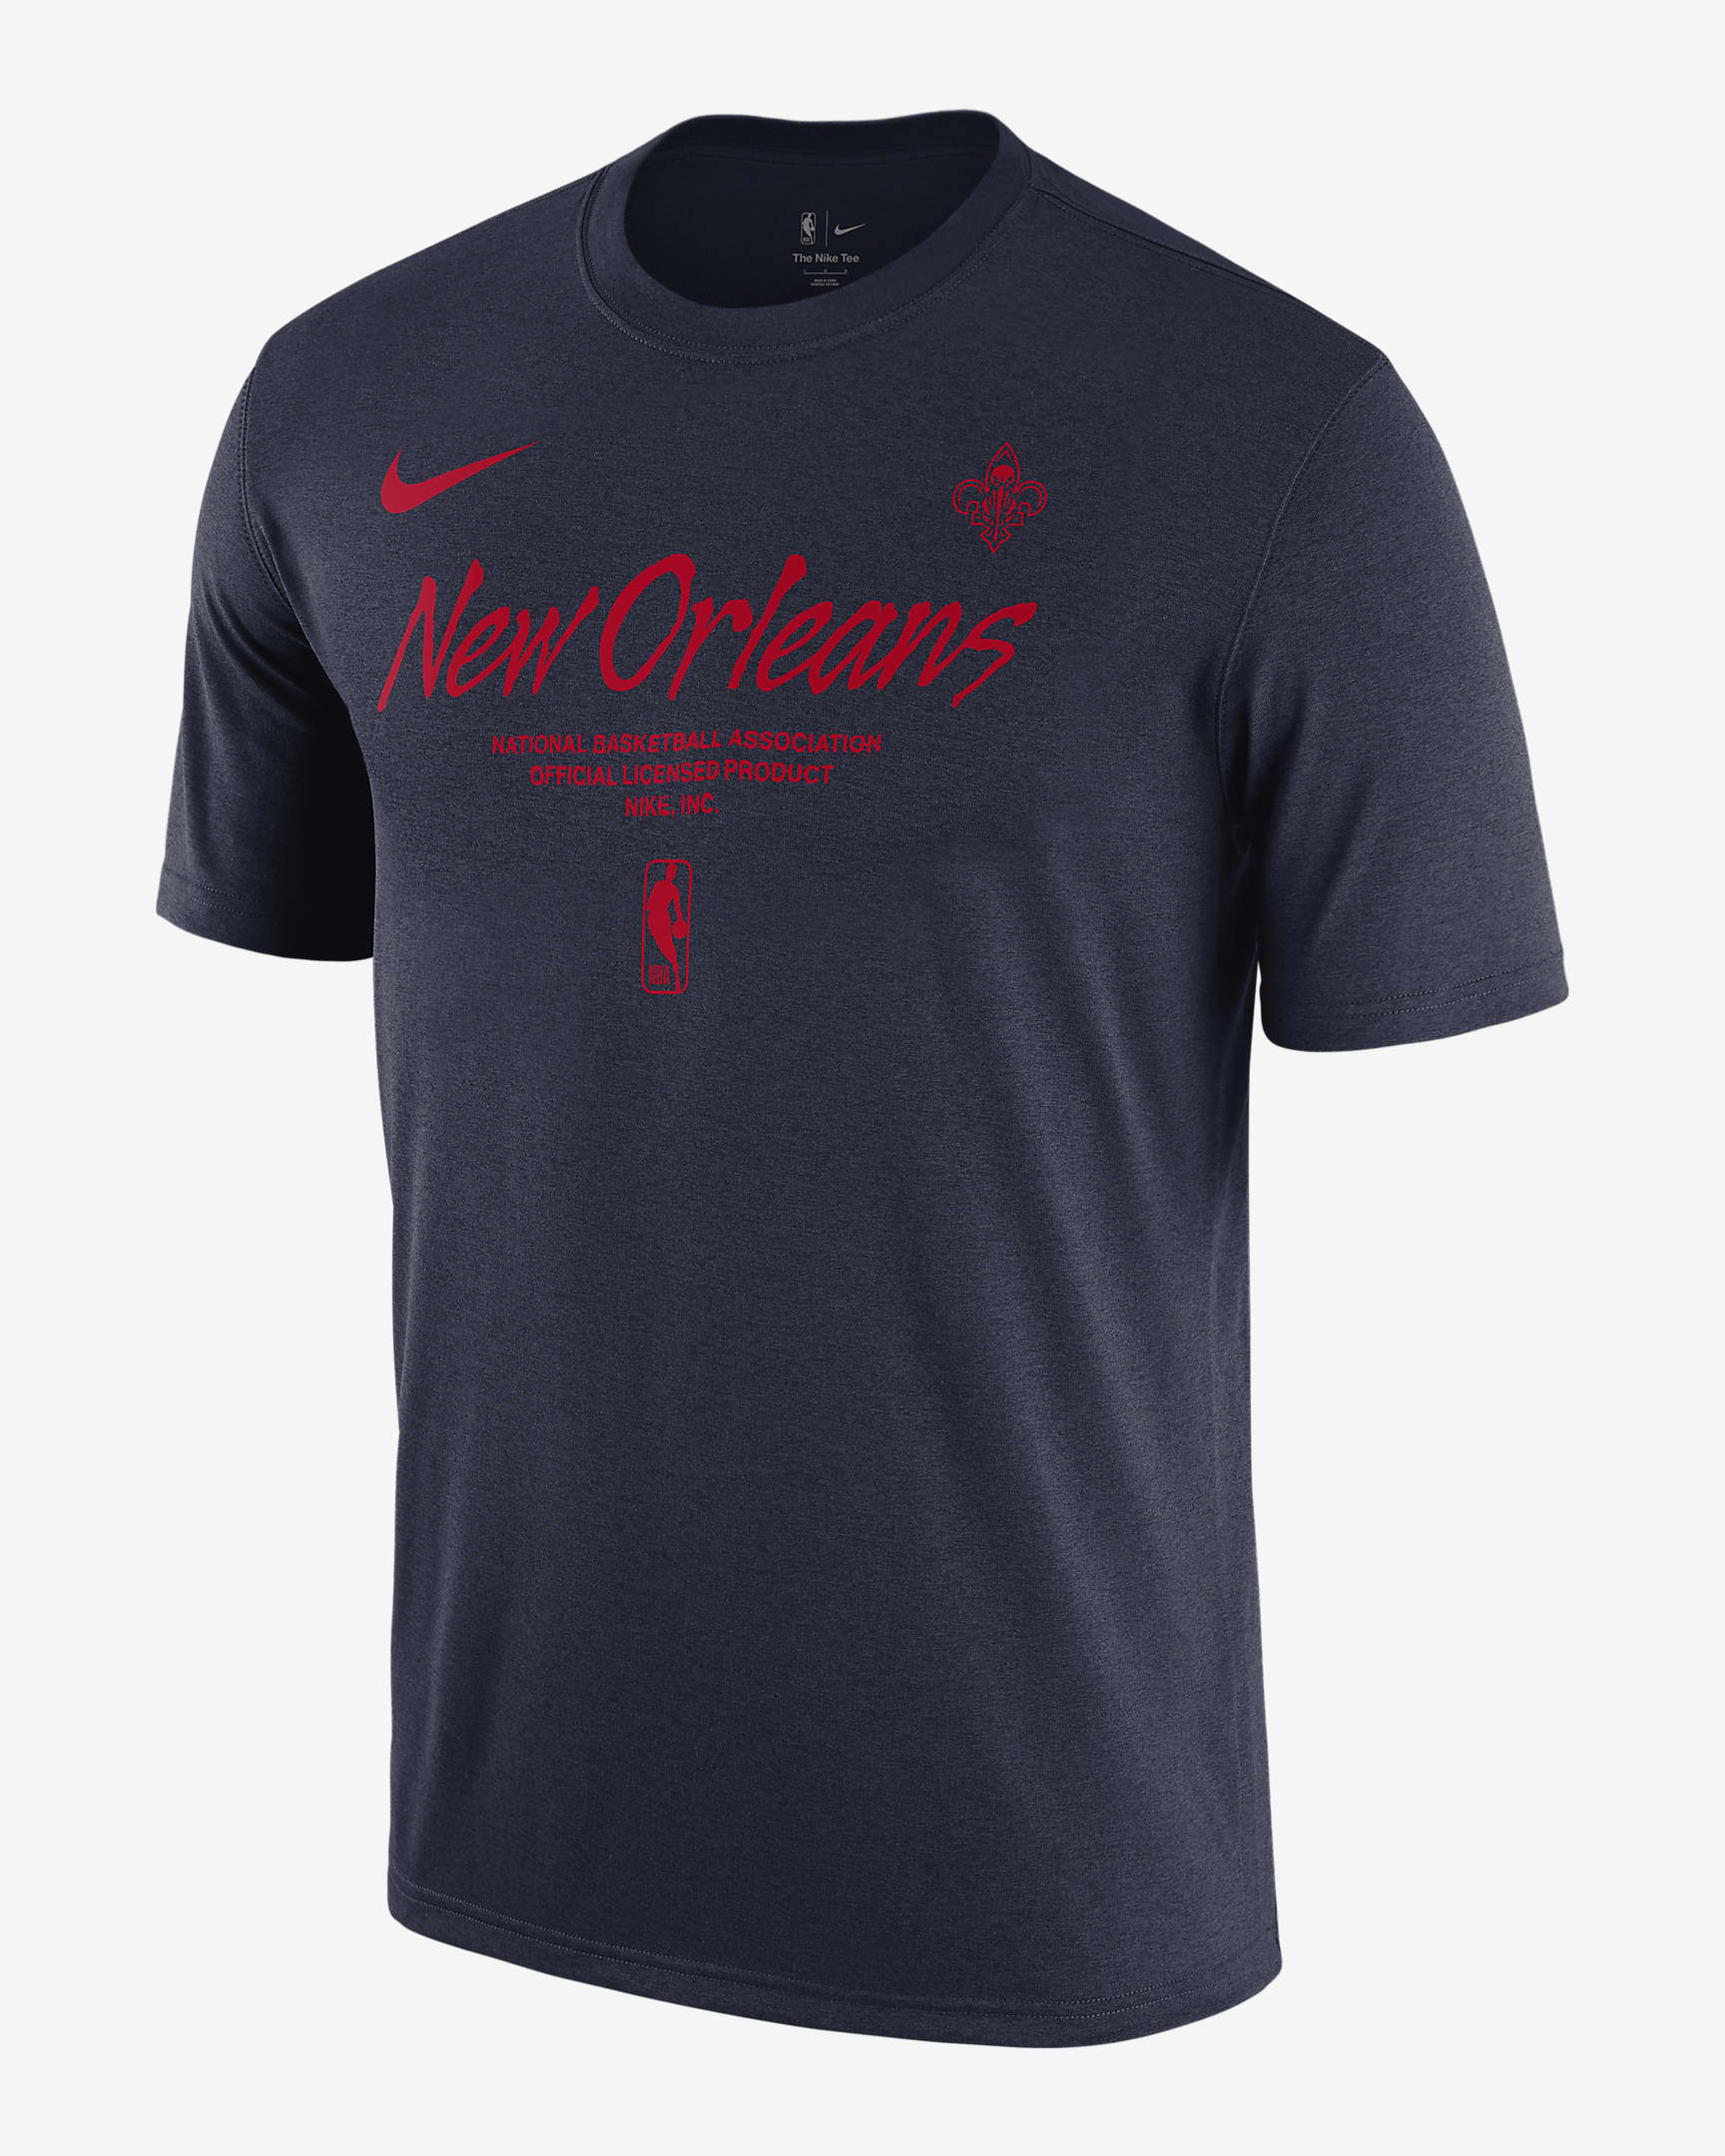 Playera Nike de la NBA para hombre New Orleans Pelicans Essential. Nike.com